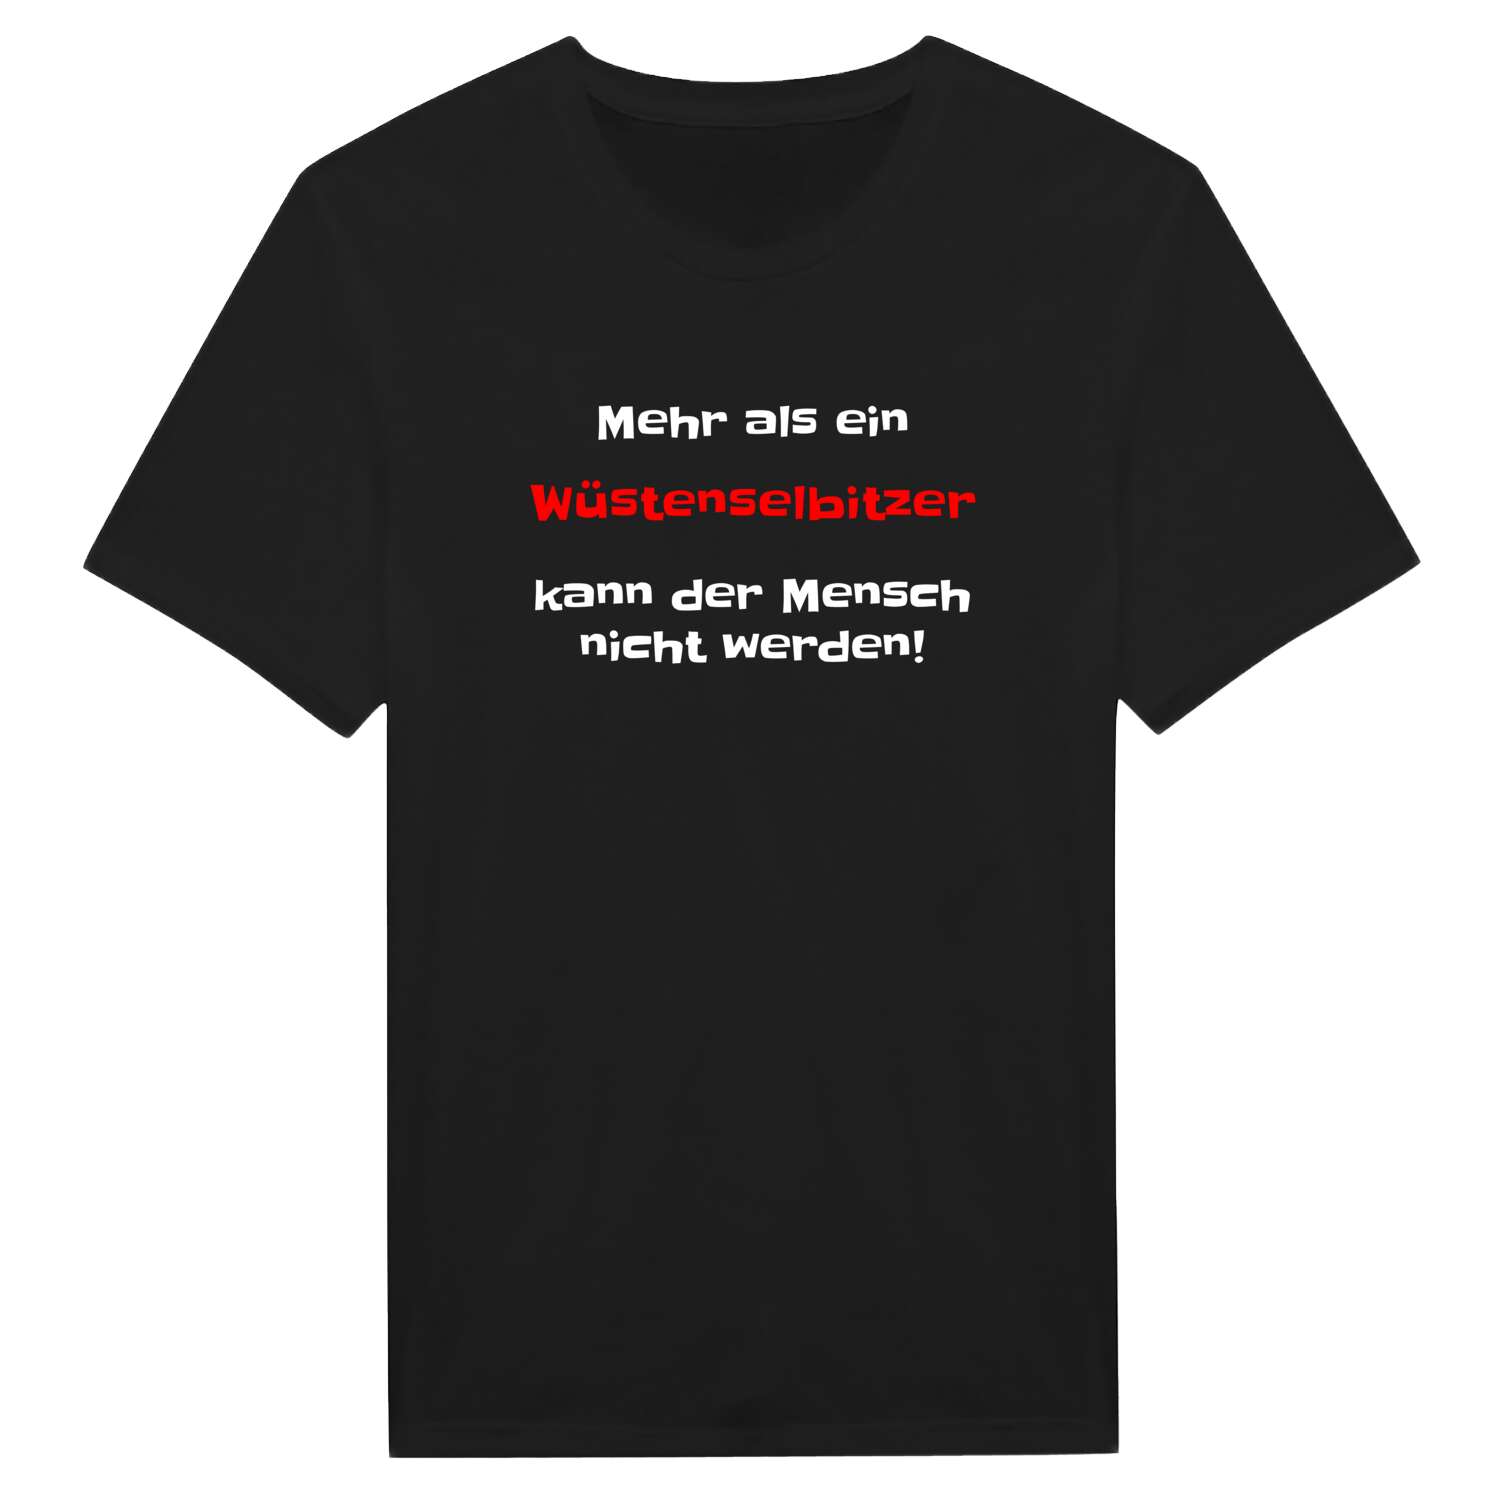 Wüstenselbitz T-Shirt »Mehr als ein«